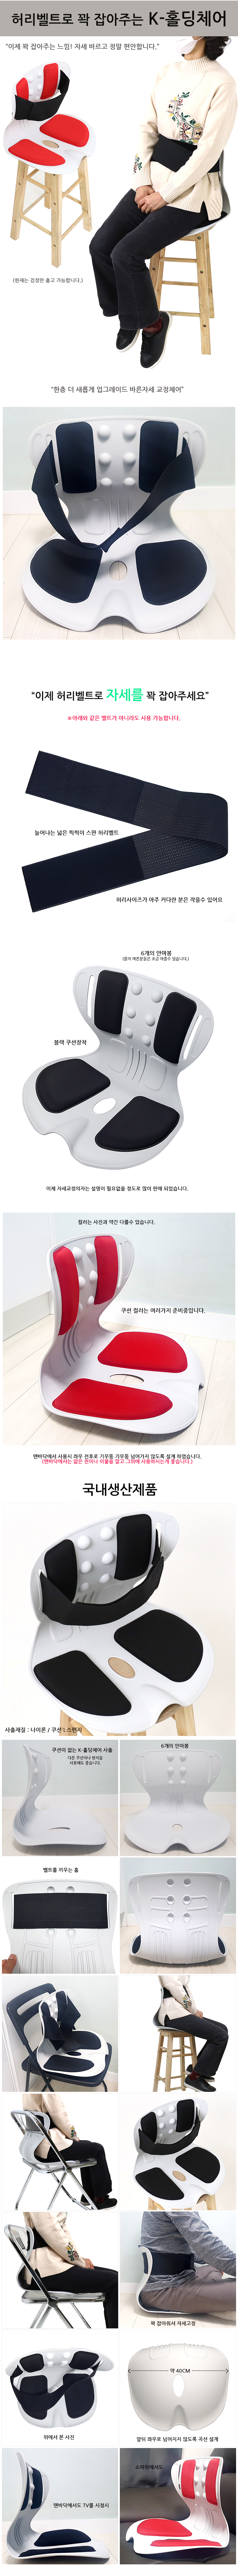 waistbelt-k-holdingchair.jpg